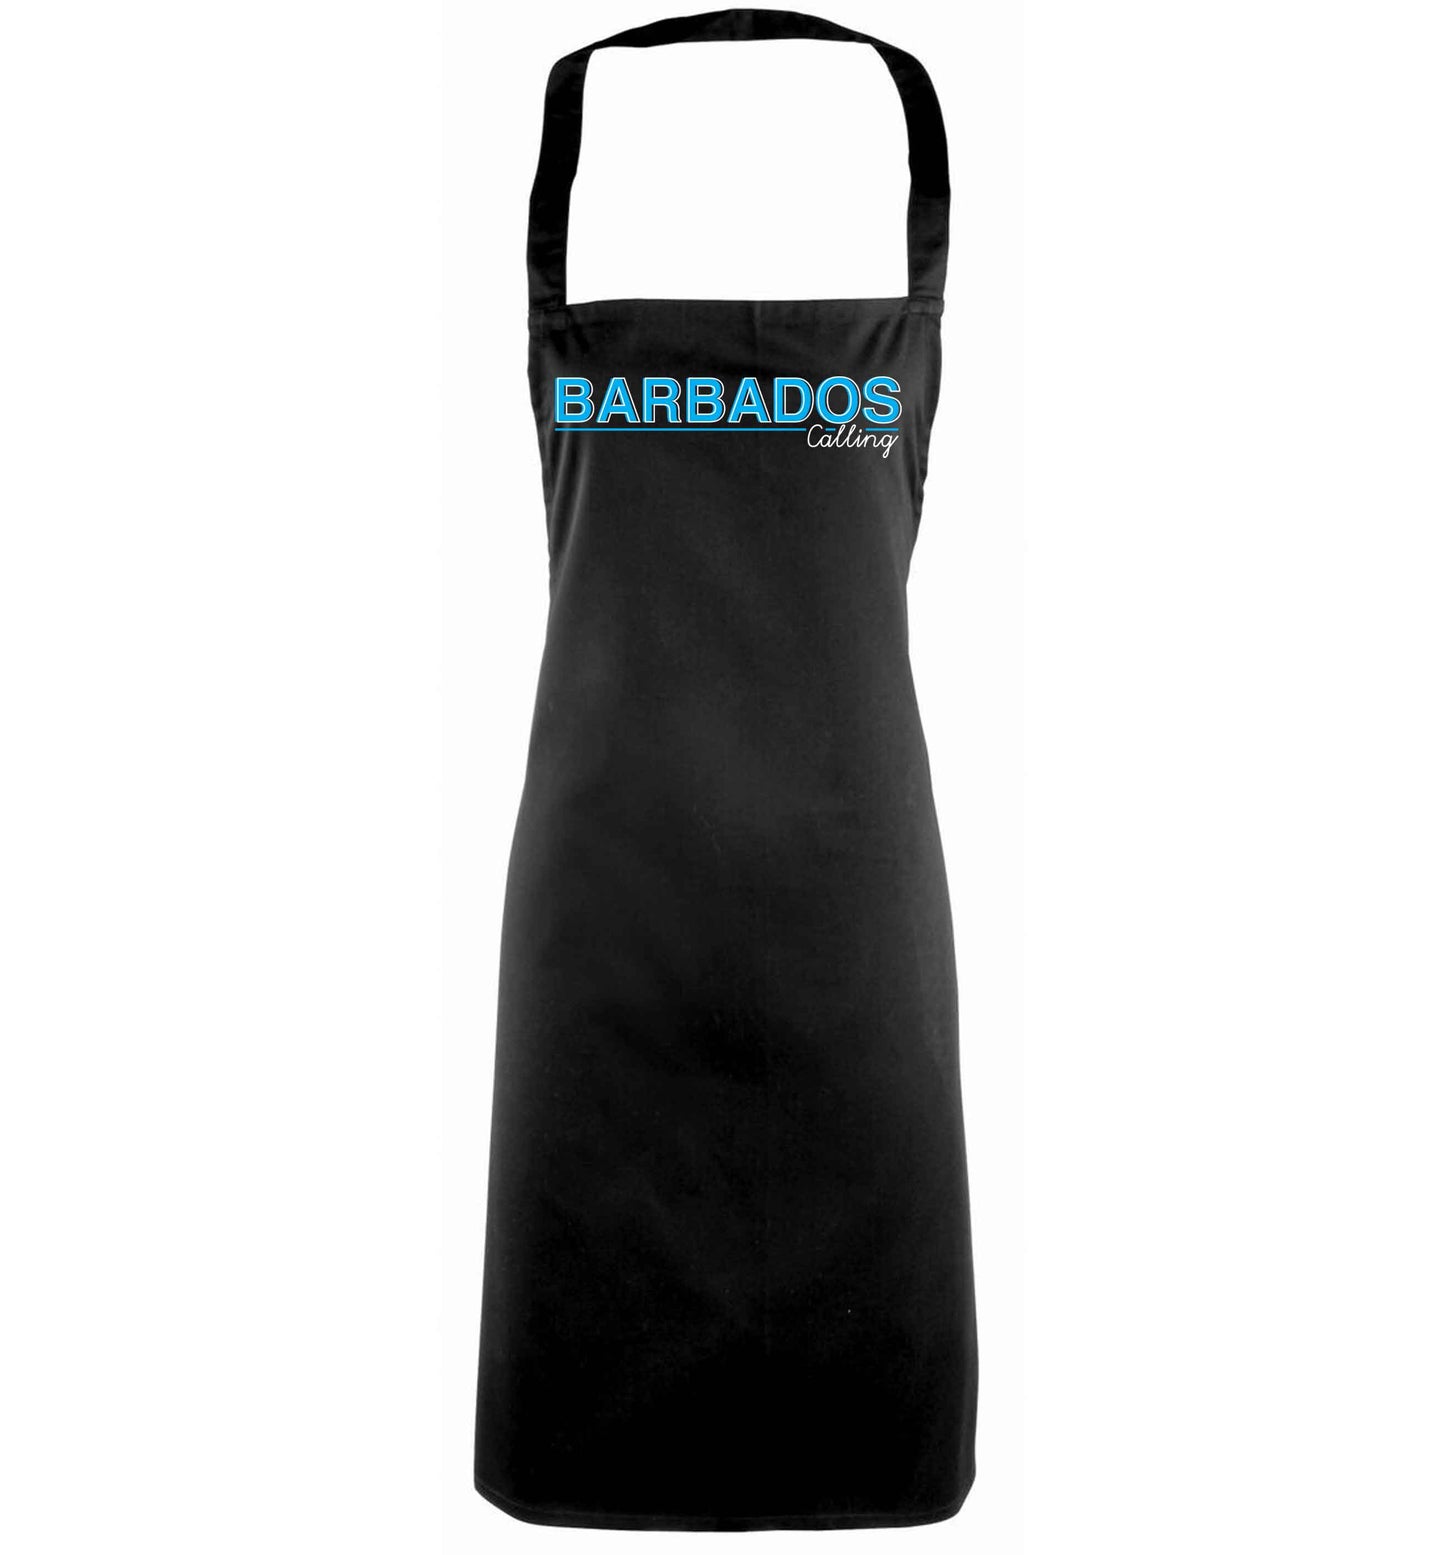 Barbados calling black apron